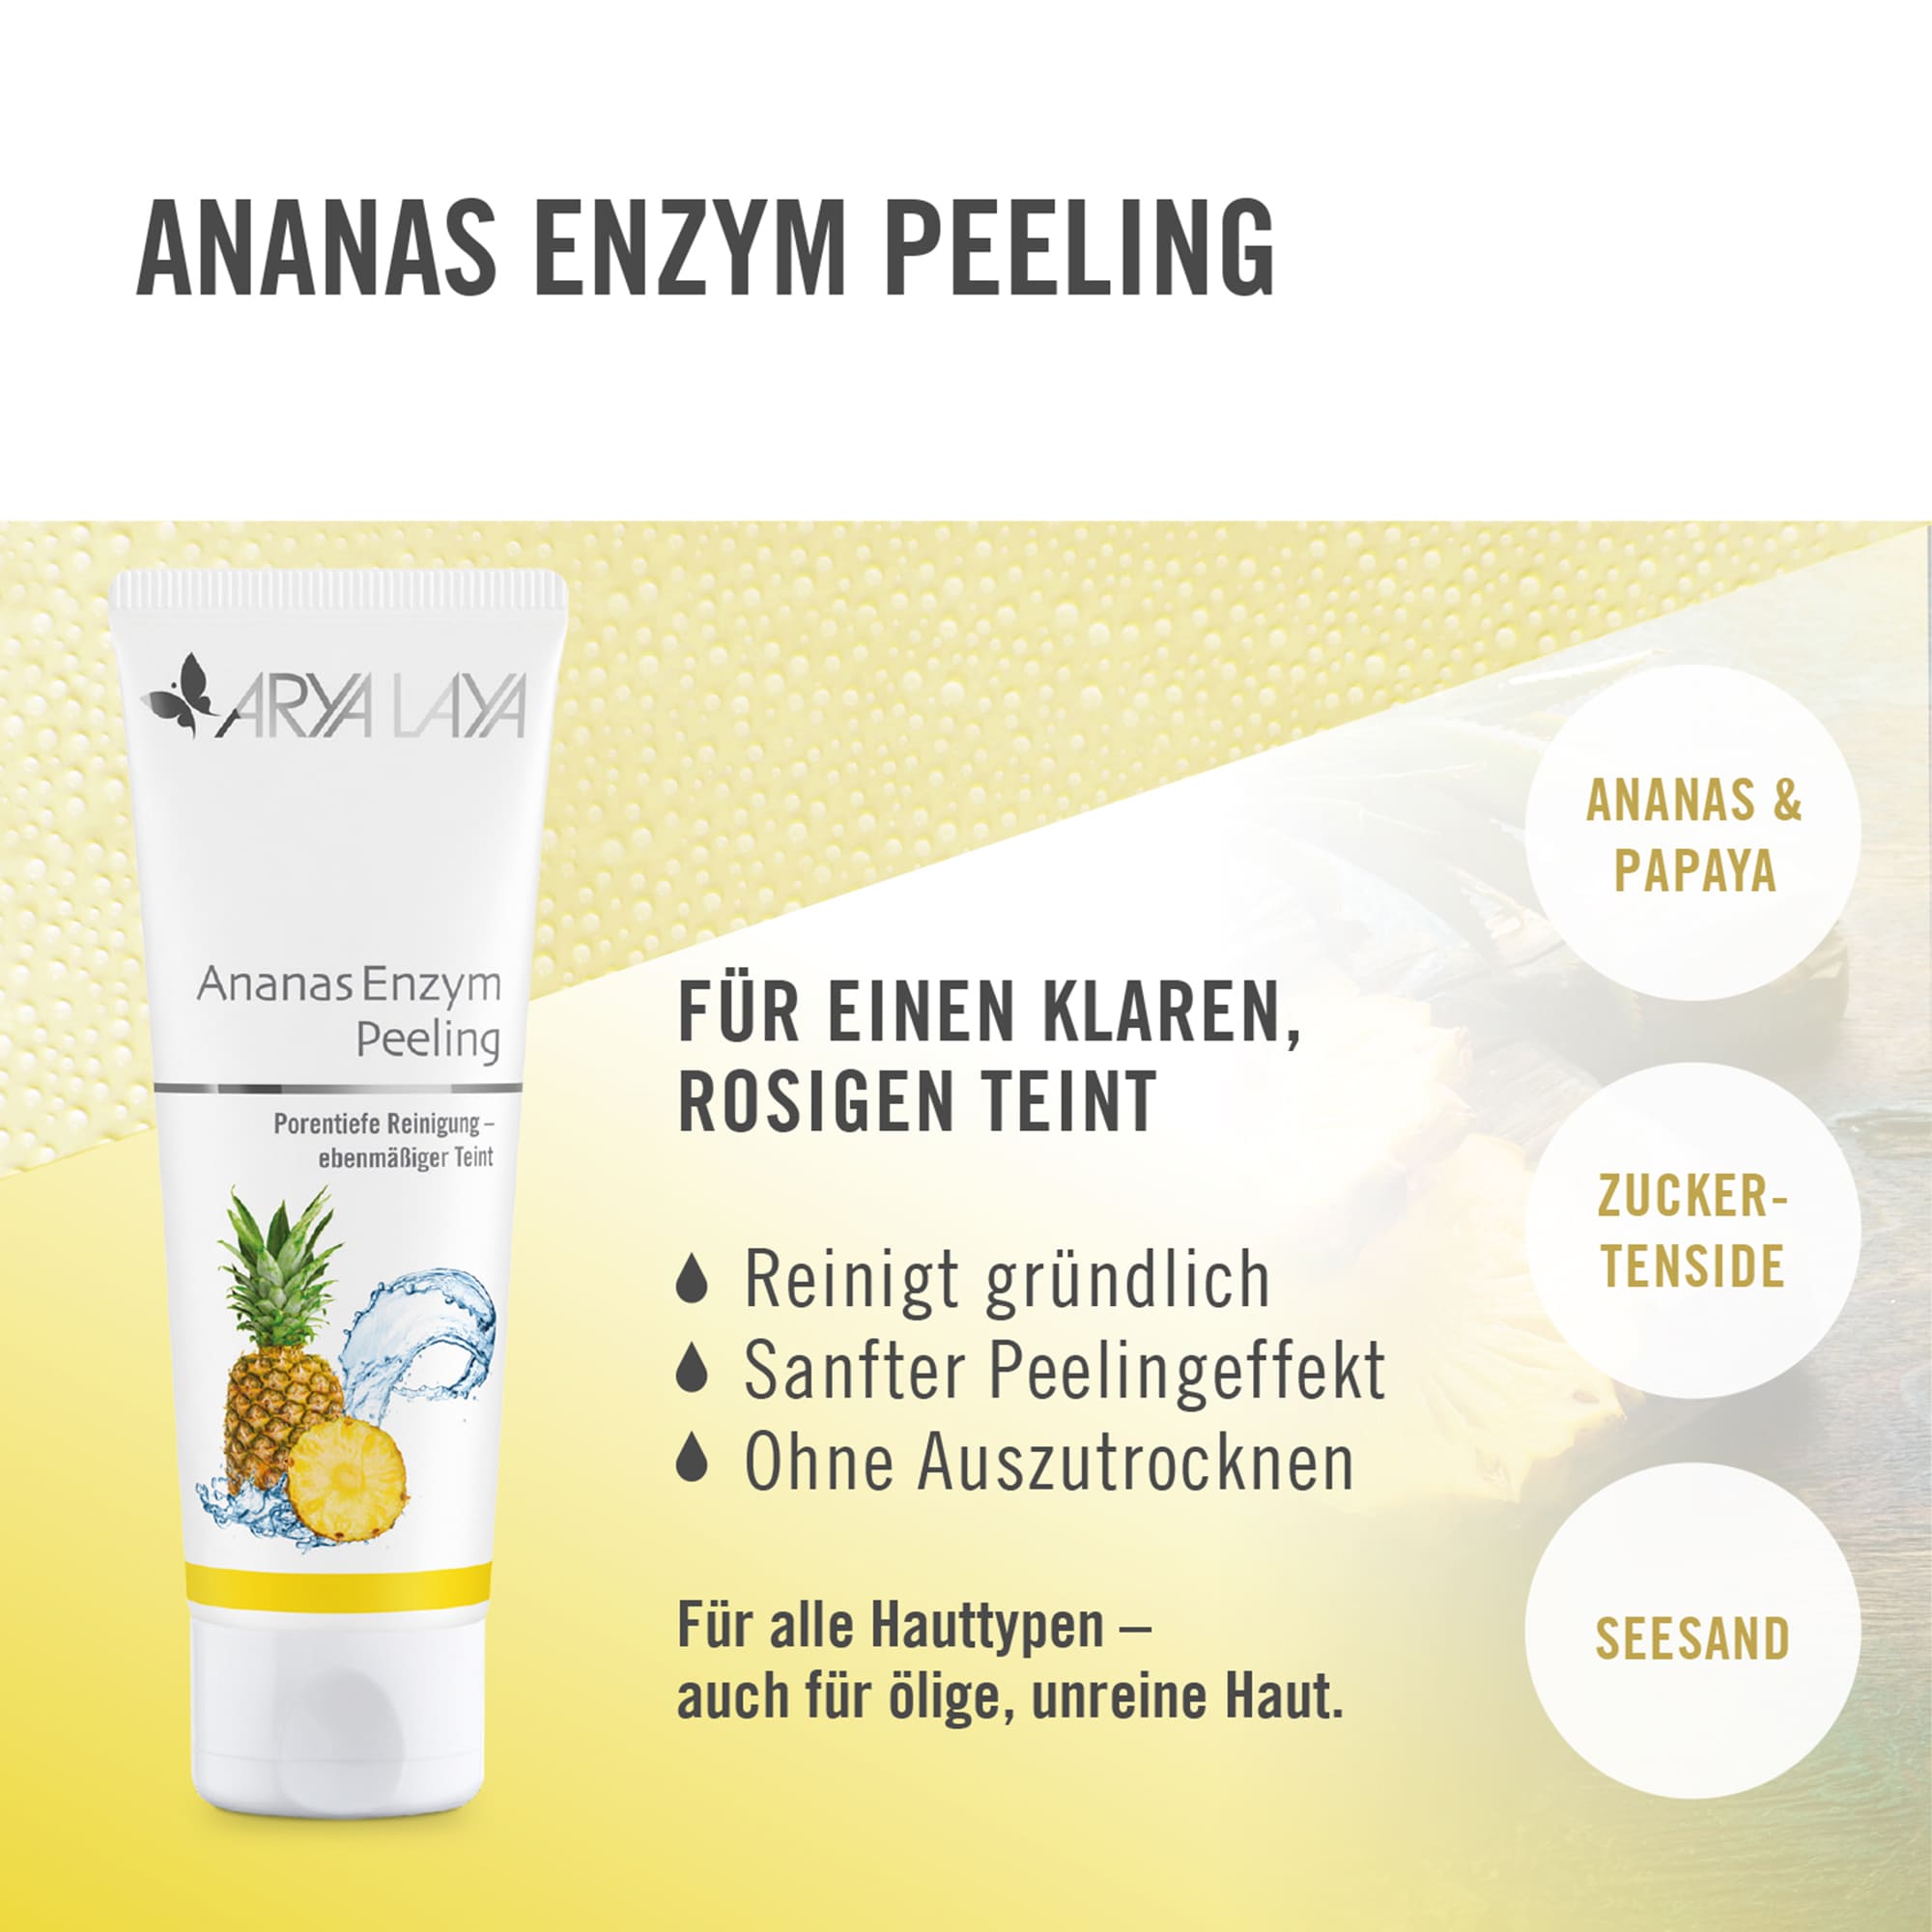 Wirkweise Ananas Enzym Peeling